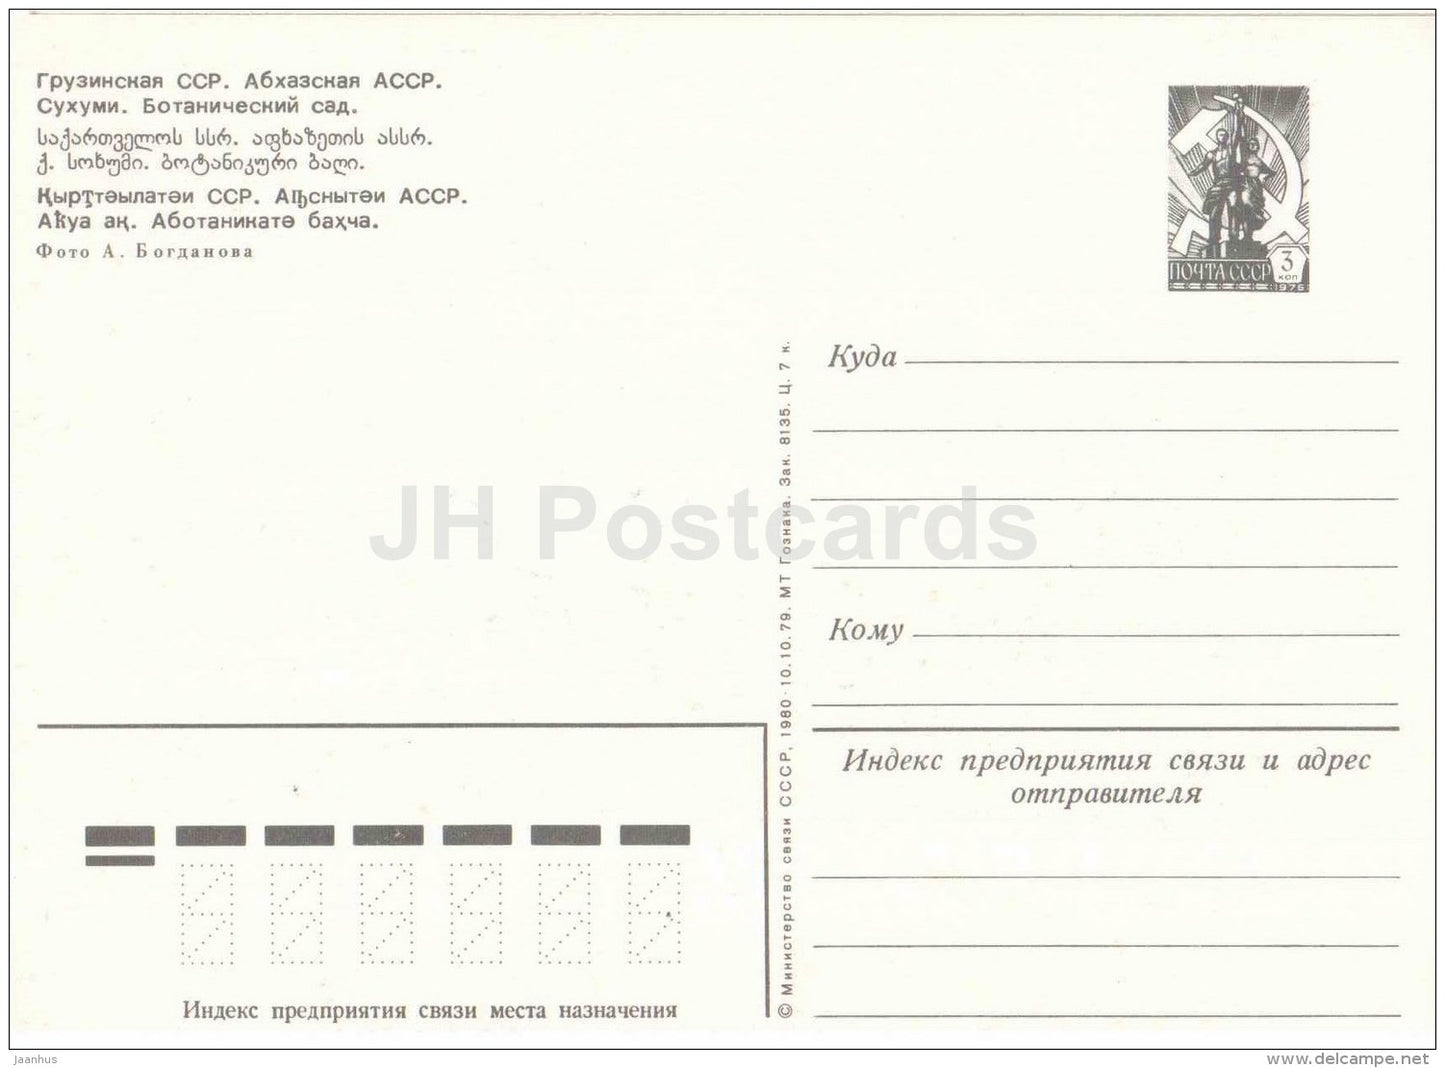 Botanical Garden - Sukhumi - Abkhazia - postal stationery - 1980 - Georgia USSR - unused - JH Postcards